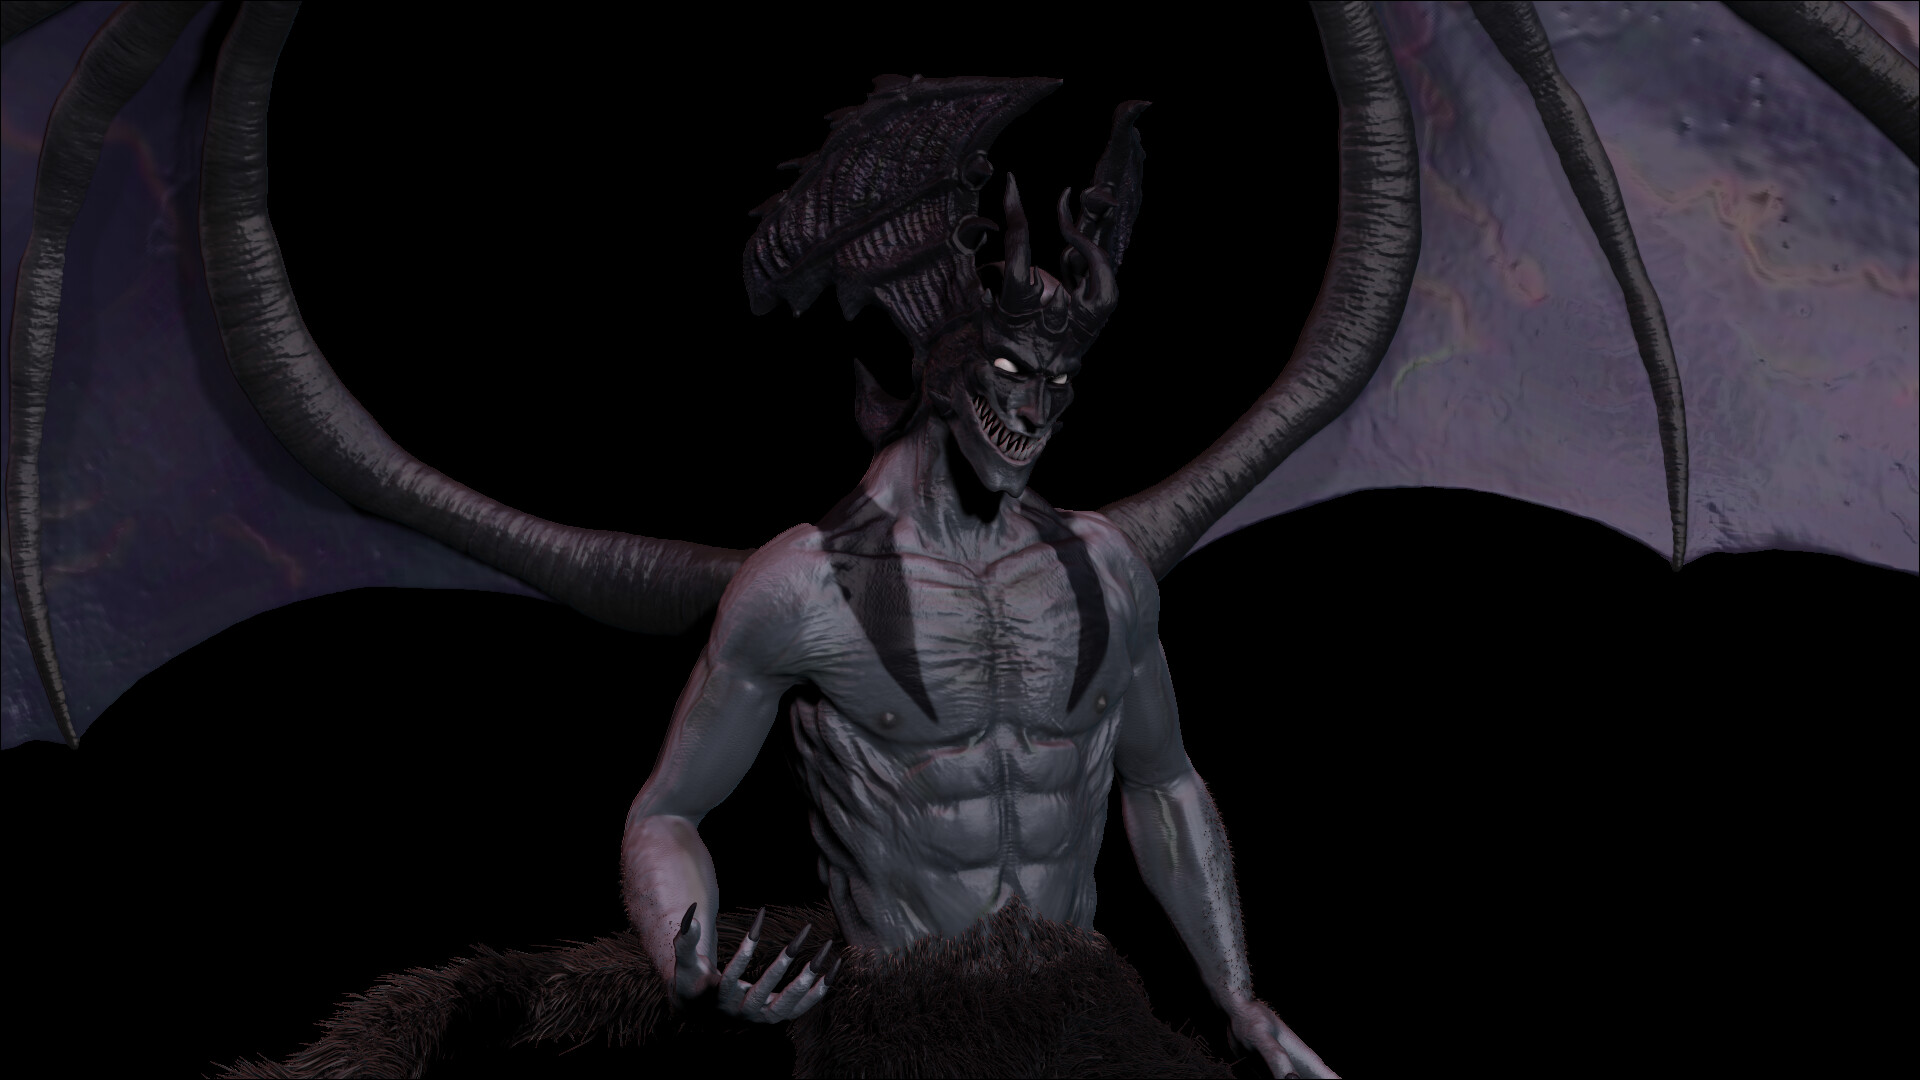 ArtStation - Devilman Crybaby - Realistic Fanart